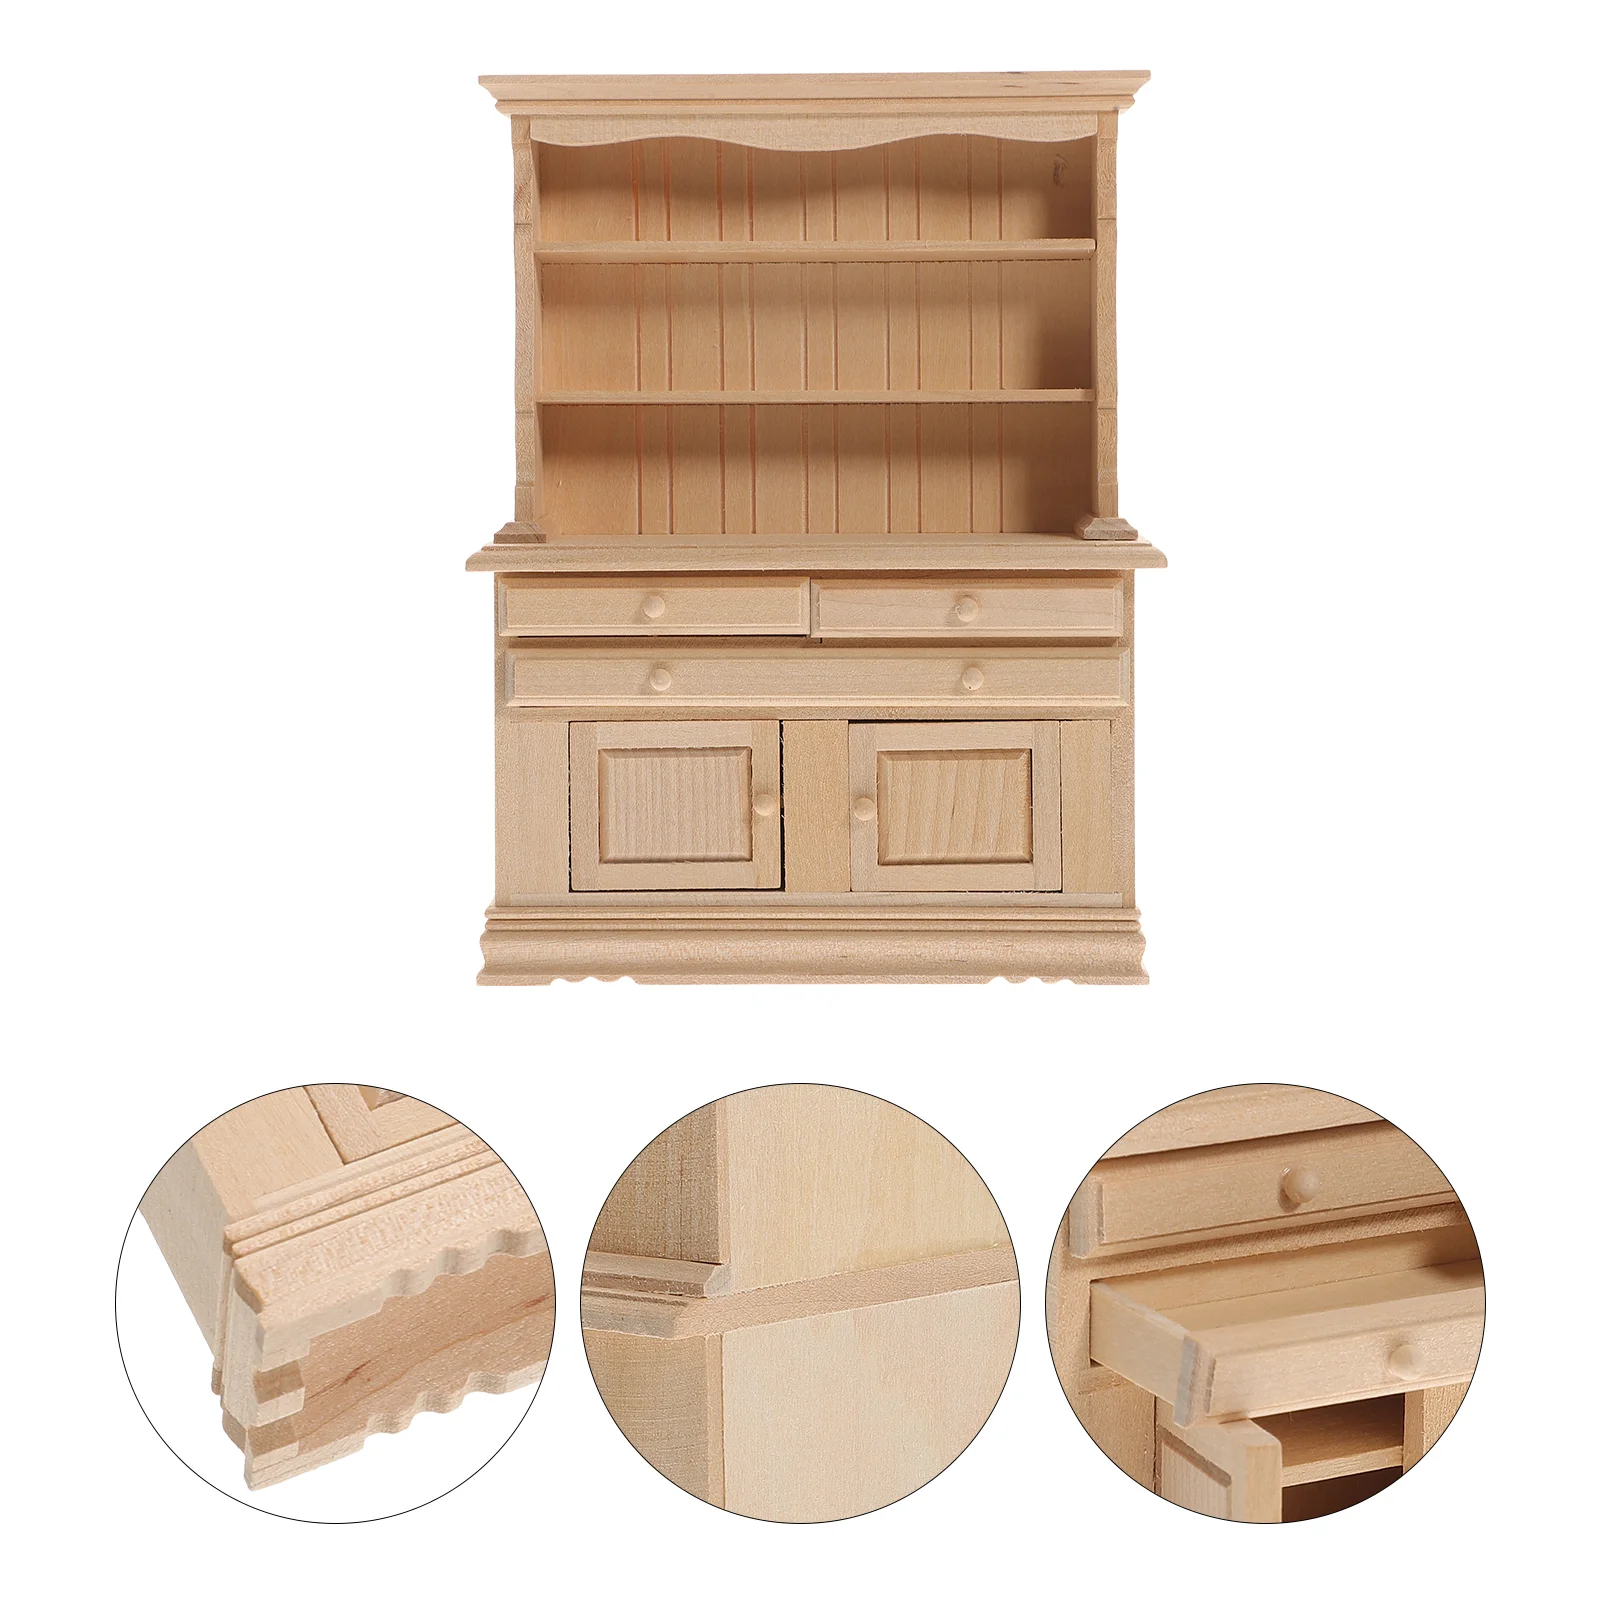 

Dollhouse Locker Decorative Mini Wardrobe Miniature Furniture Ornament Wooden Bookcase Storage Cabinet Model